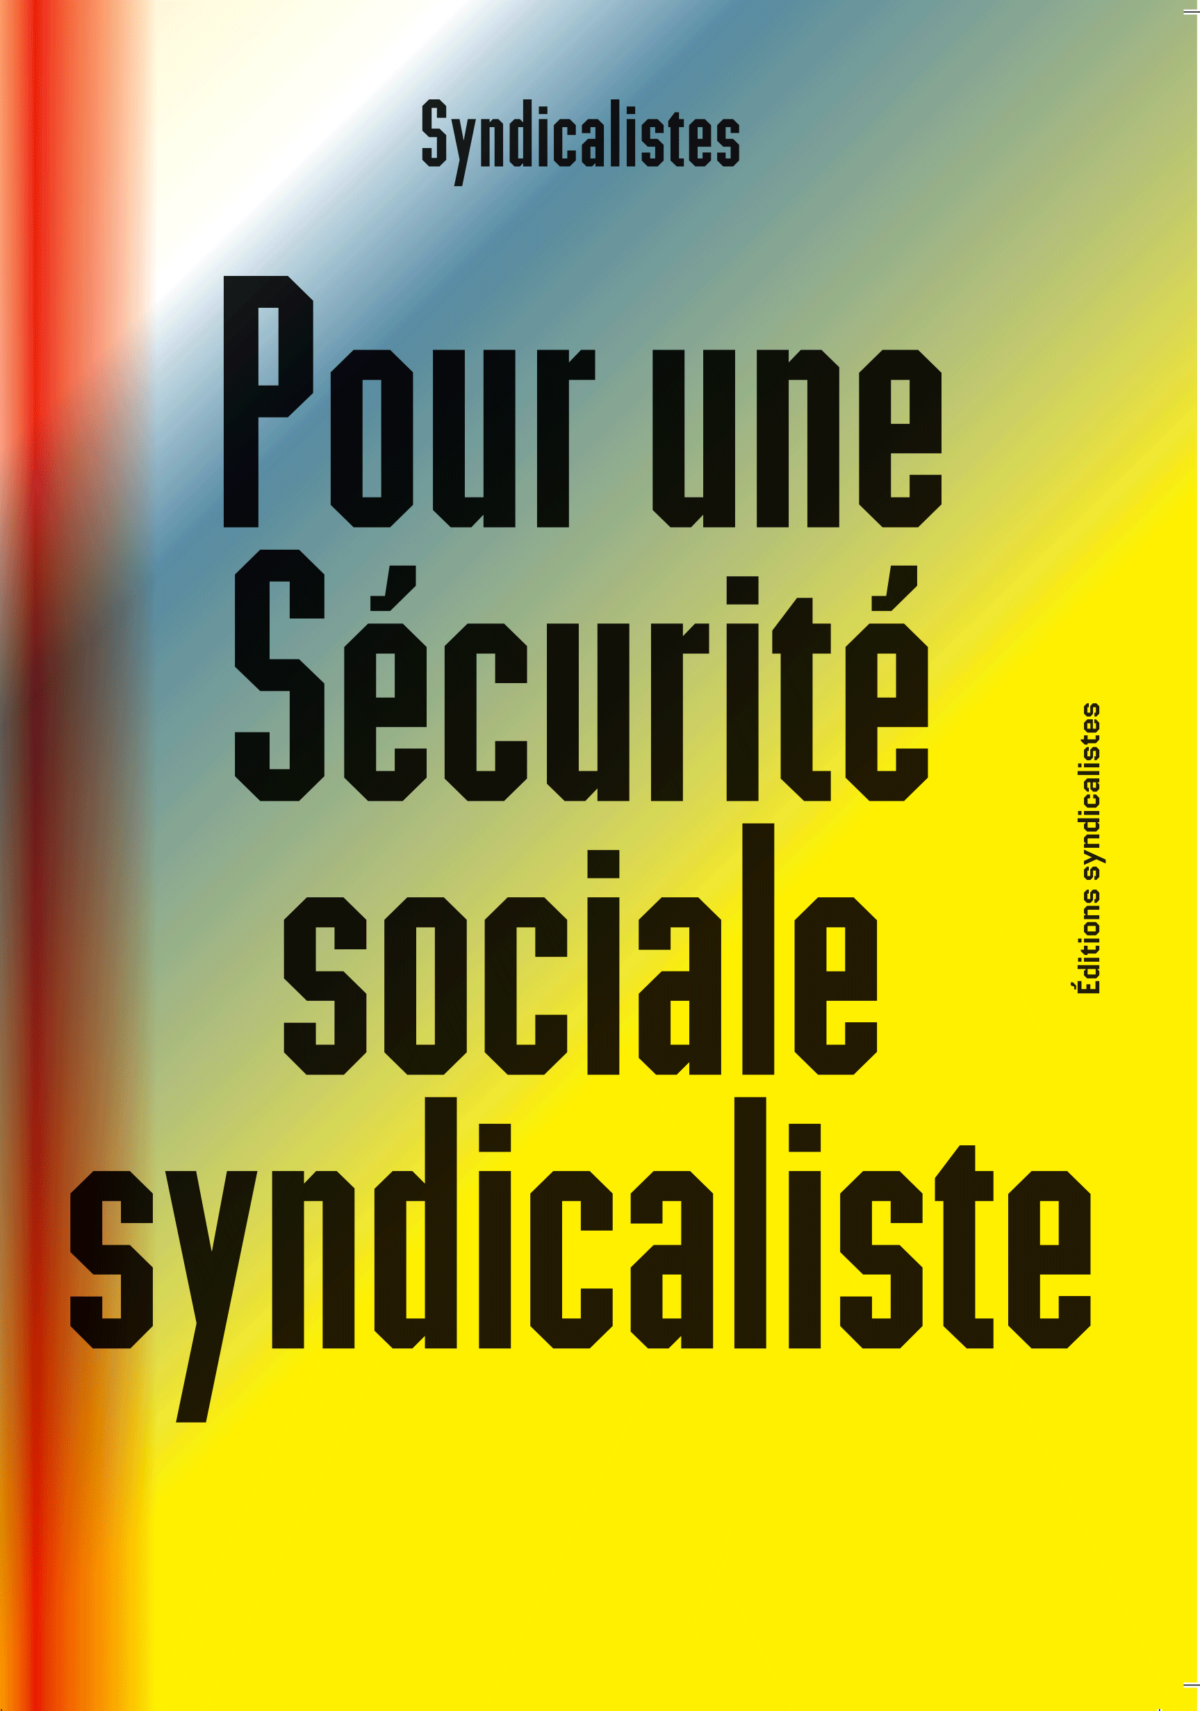 Pour une sécurité sociale syndicaliste